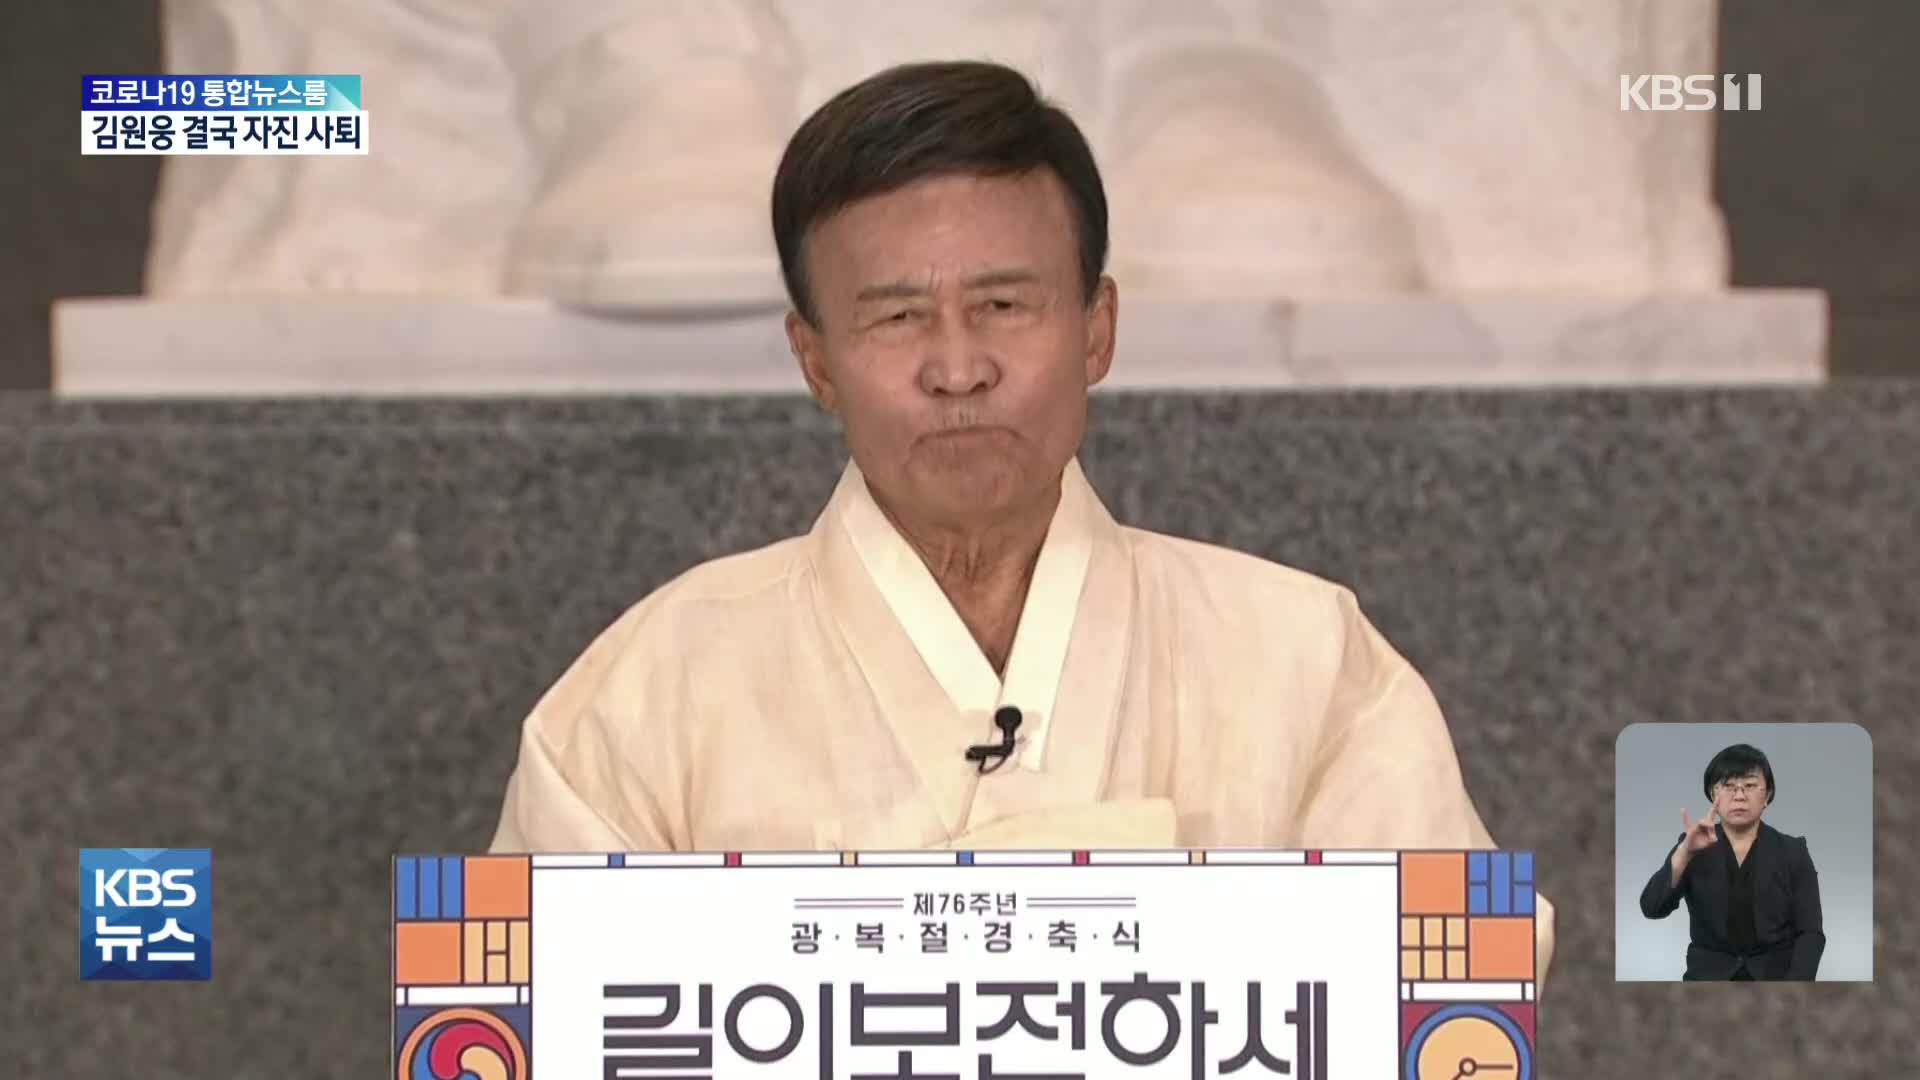 김원웅 광복회장 자진 사퇴…“감독관리 잘못” 횡령 의혹은 부인